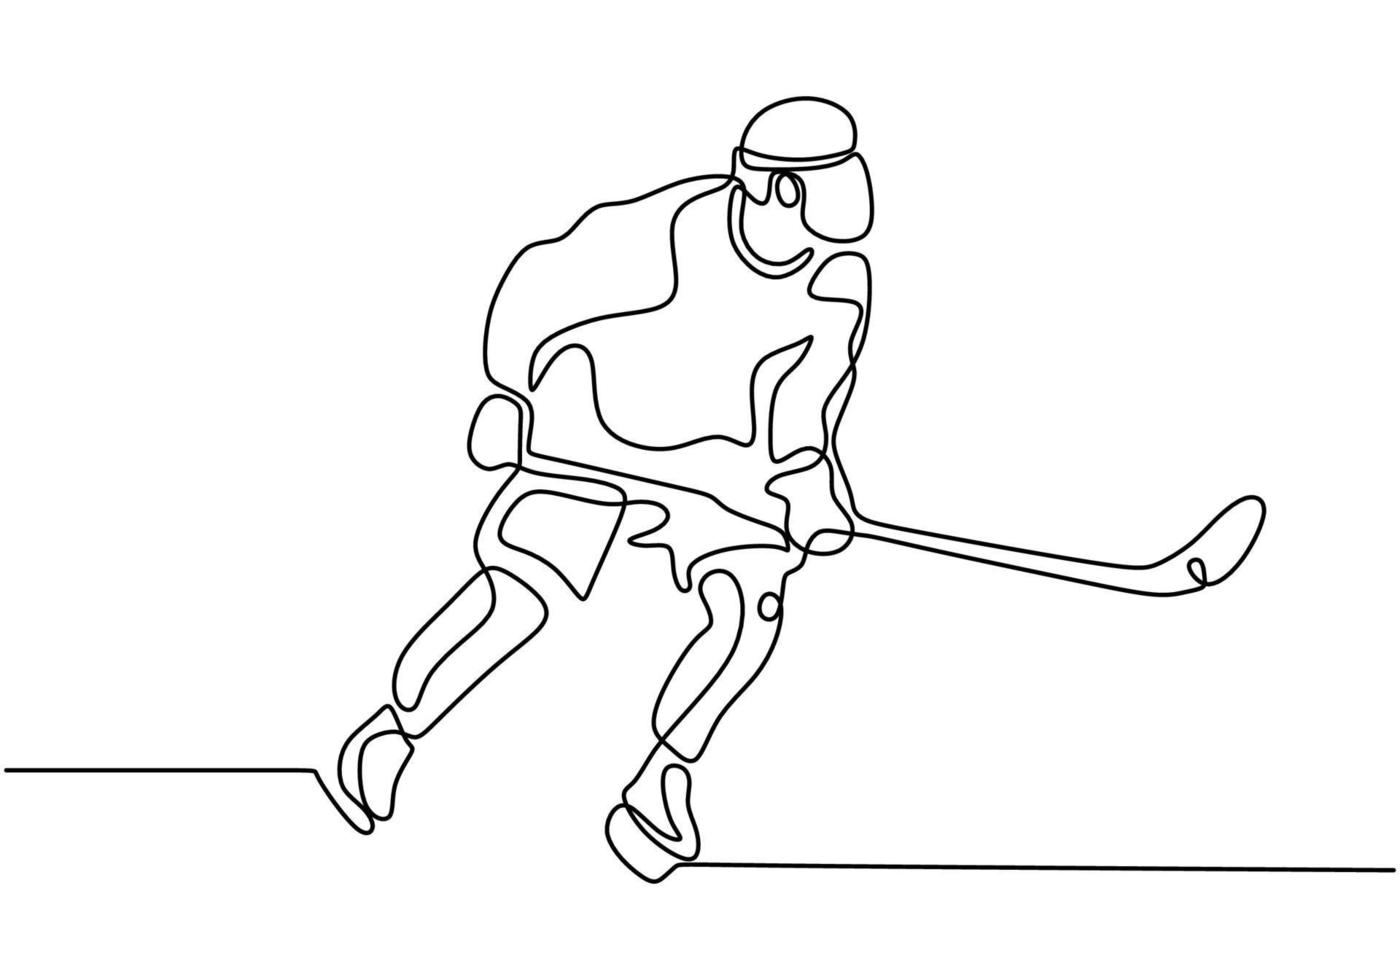 giocatore di hockey su ghiaccio un'illustrazione vettoriale di disegno a tratteggio continuo.